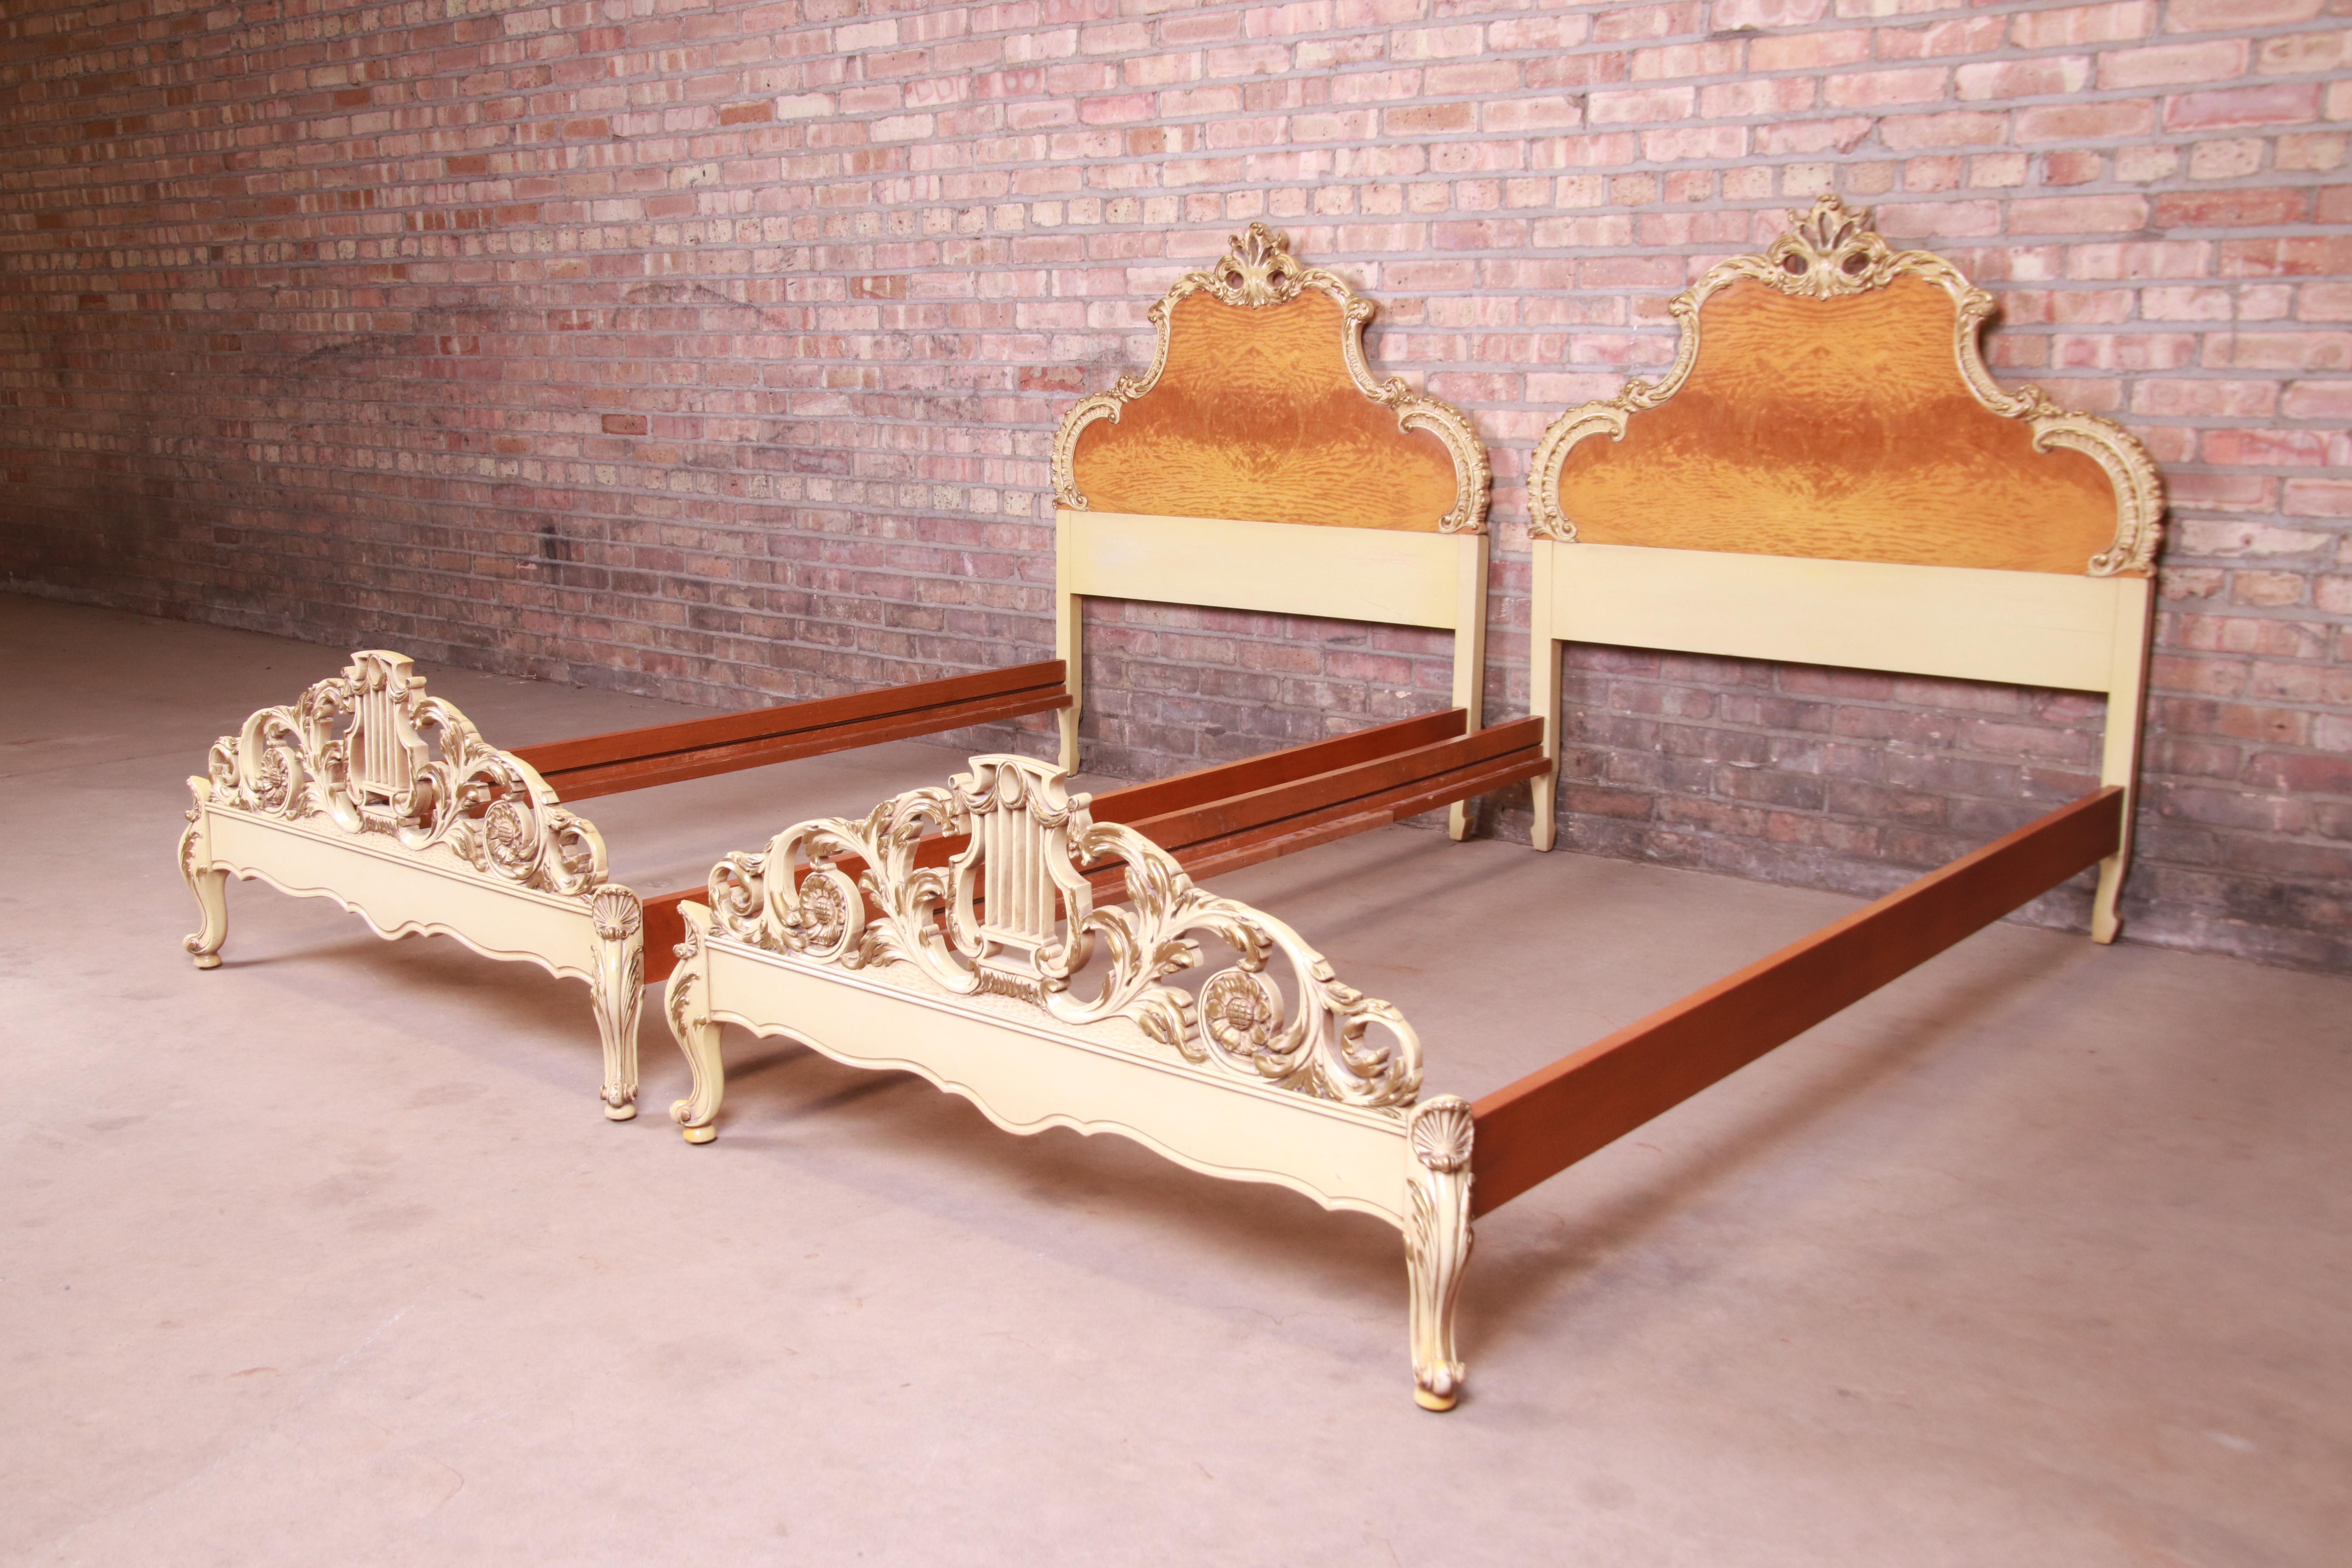 Ein prächtiges Paar französischer Rokoko-Betten im Stil von Louis XV

Von Romweber

USA, etwa 1930er Jahre

Exotisches, genopptes afrikanisches Avodire-Holz, mit Farbe und vergoldeten Details.

Maße: 42.75